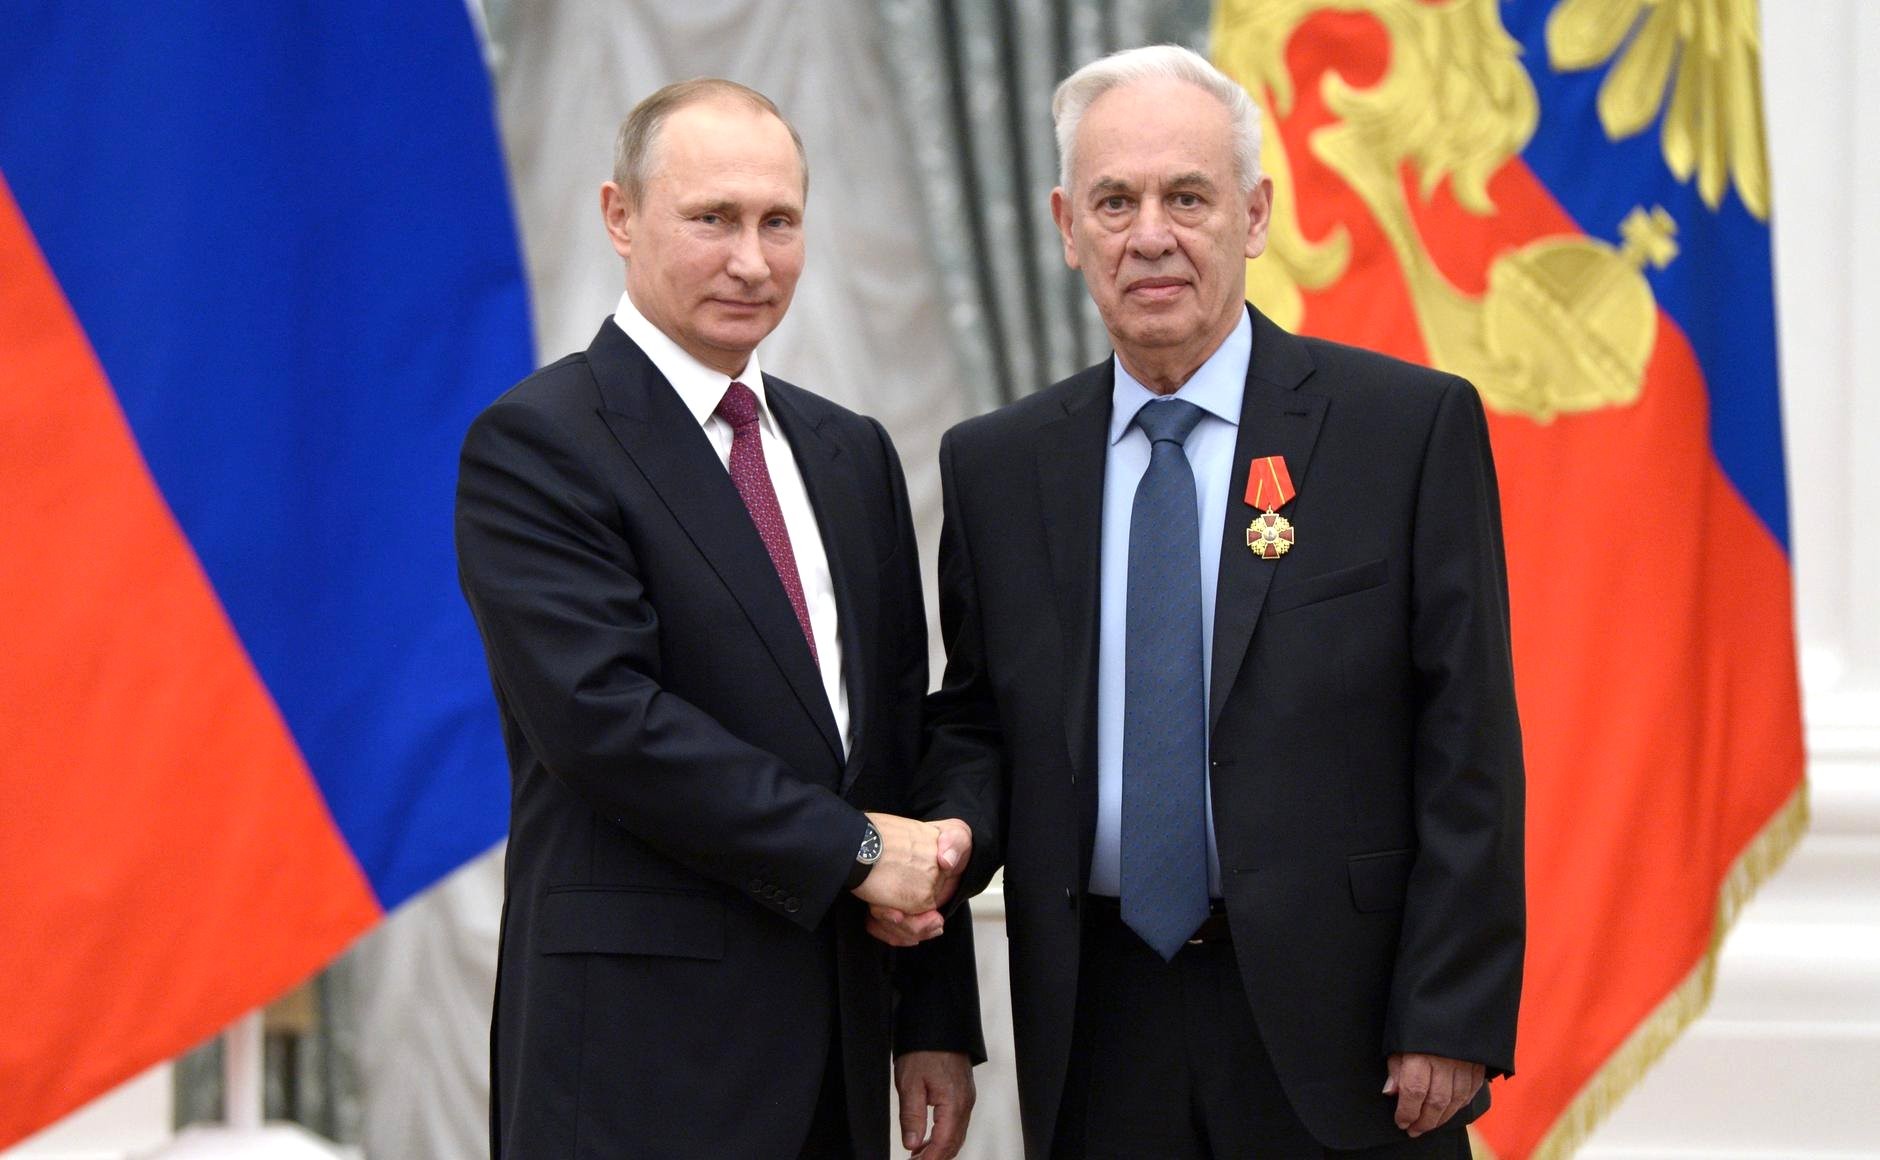 22 сентября 2016 года, Москва, Кремль. Роллан Мартиросов награжден орденом Александра Невского